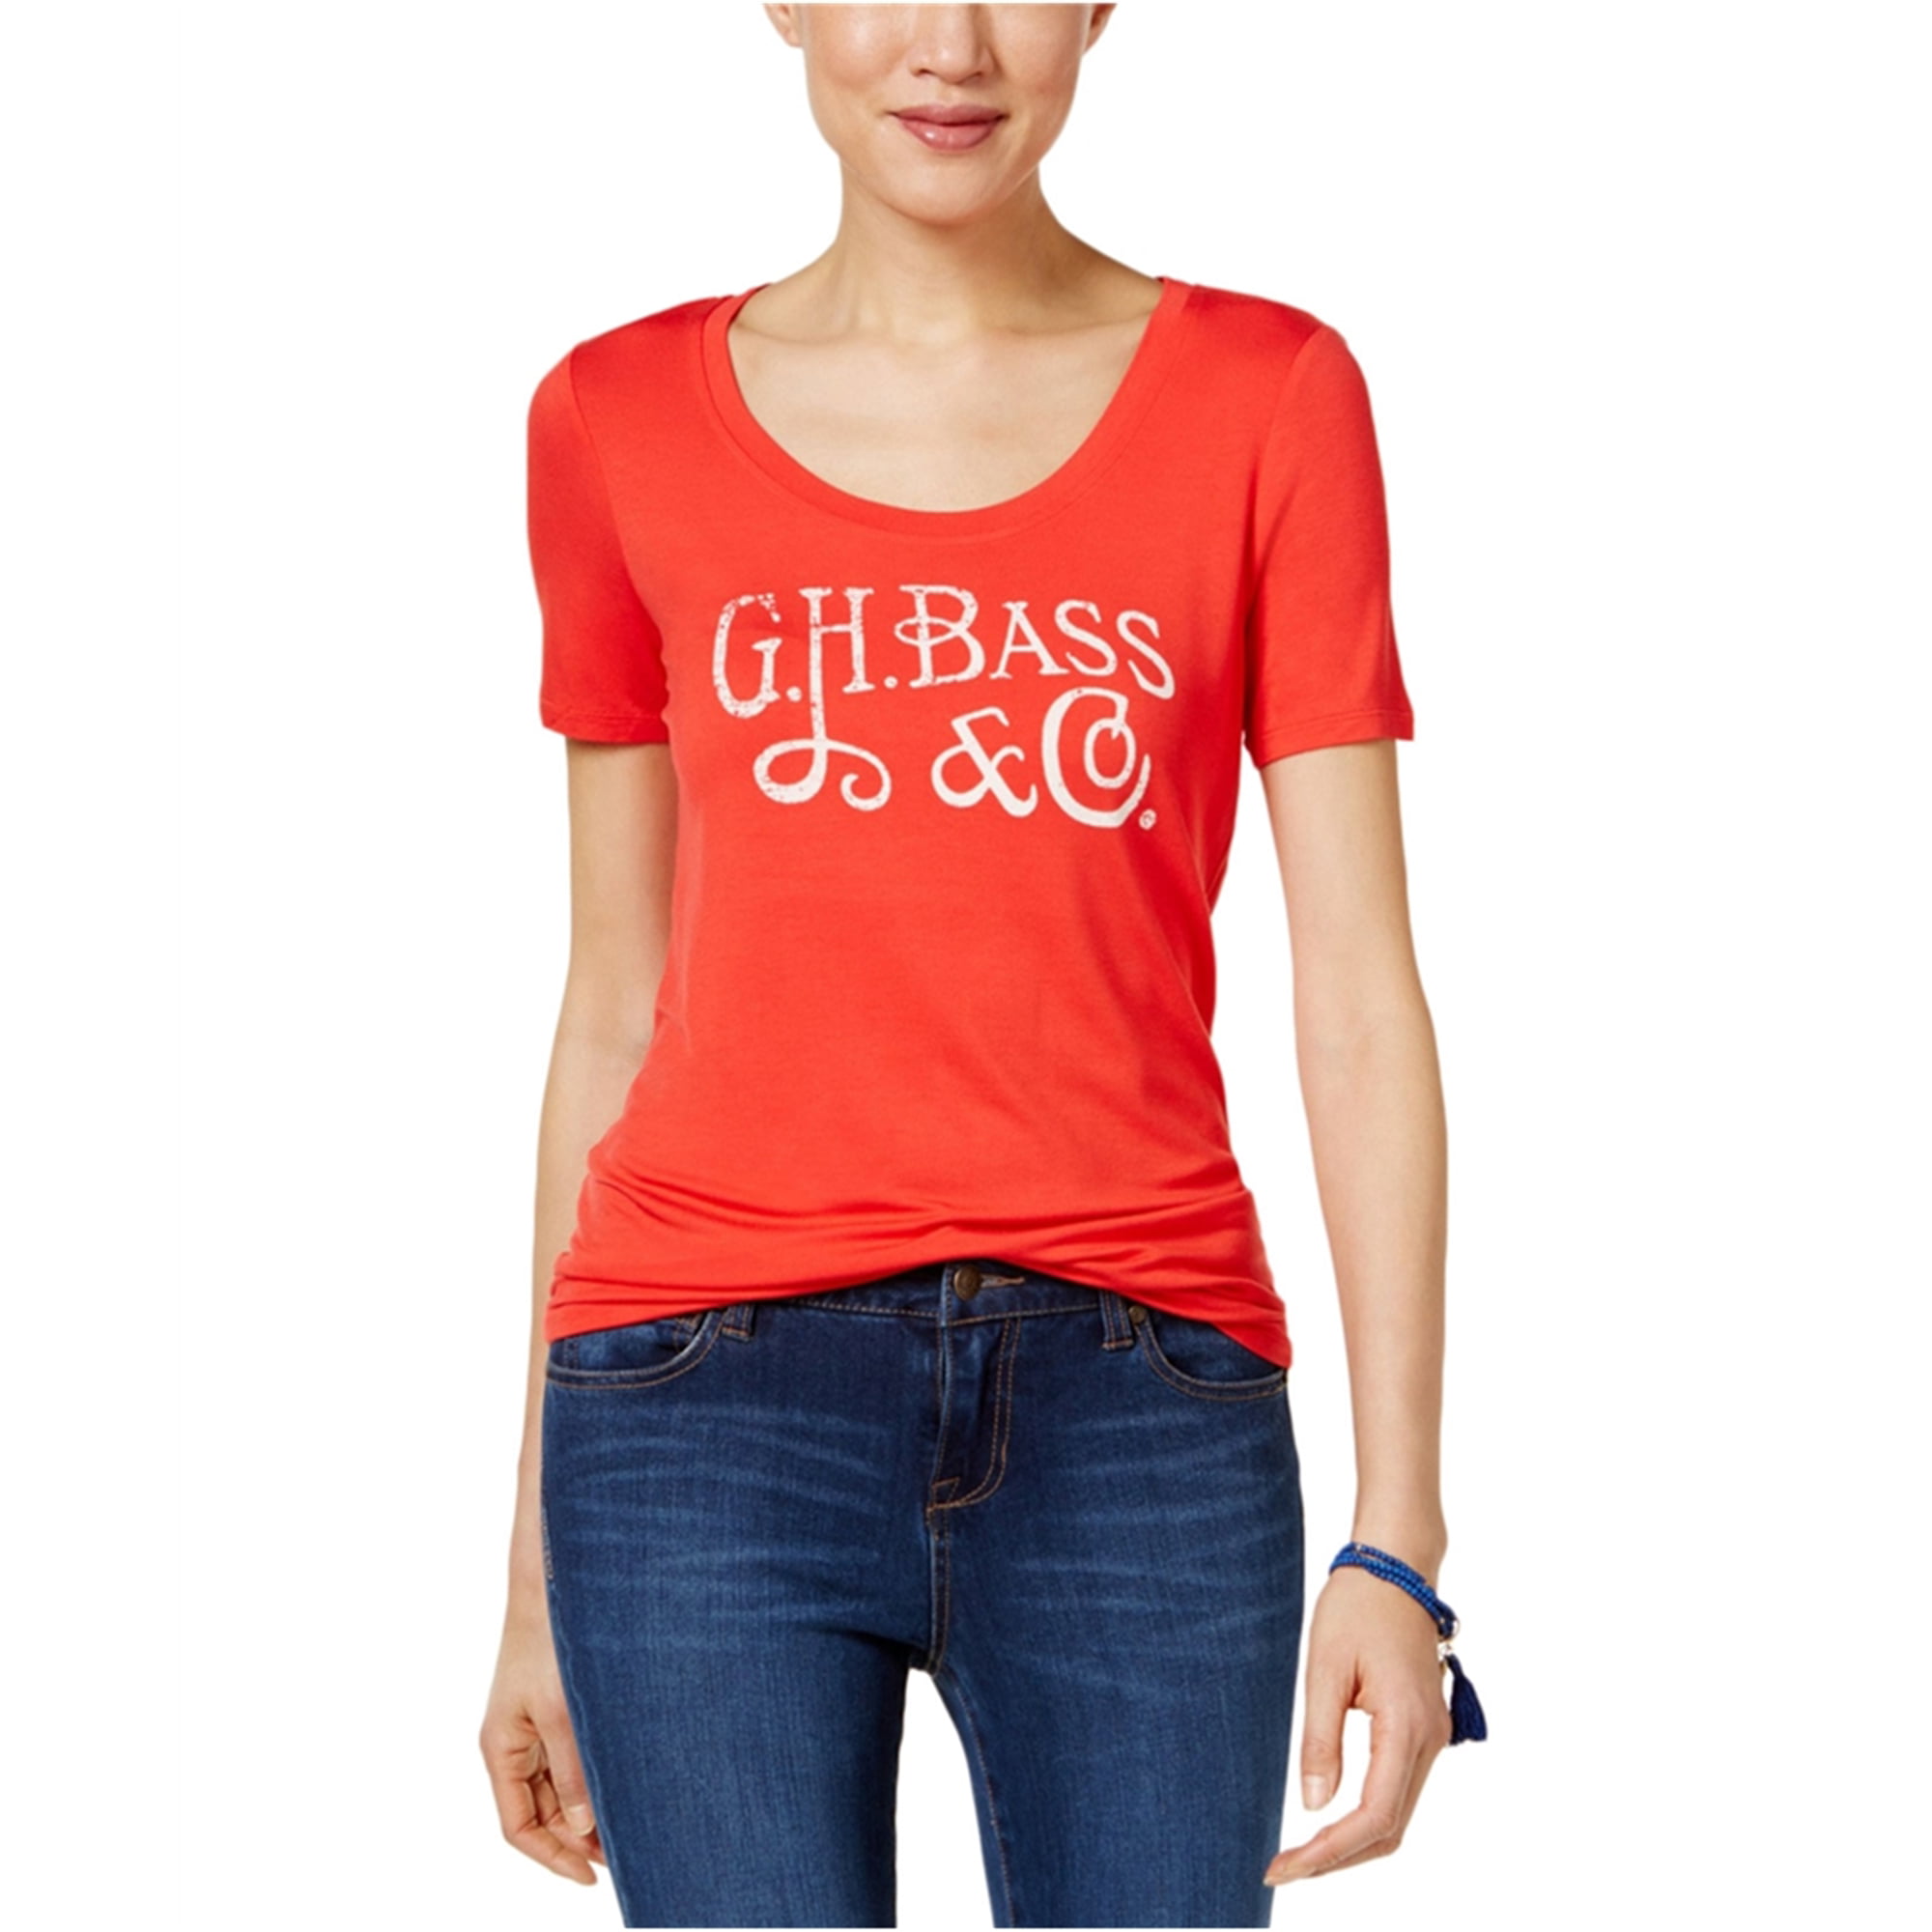 G.H. Bass - G.H. Bass & Co. Womens Solid Logo Graphic T-Shirt - Walmart